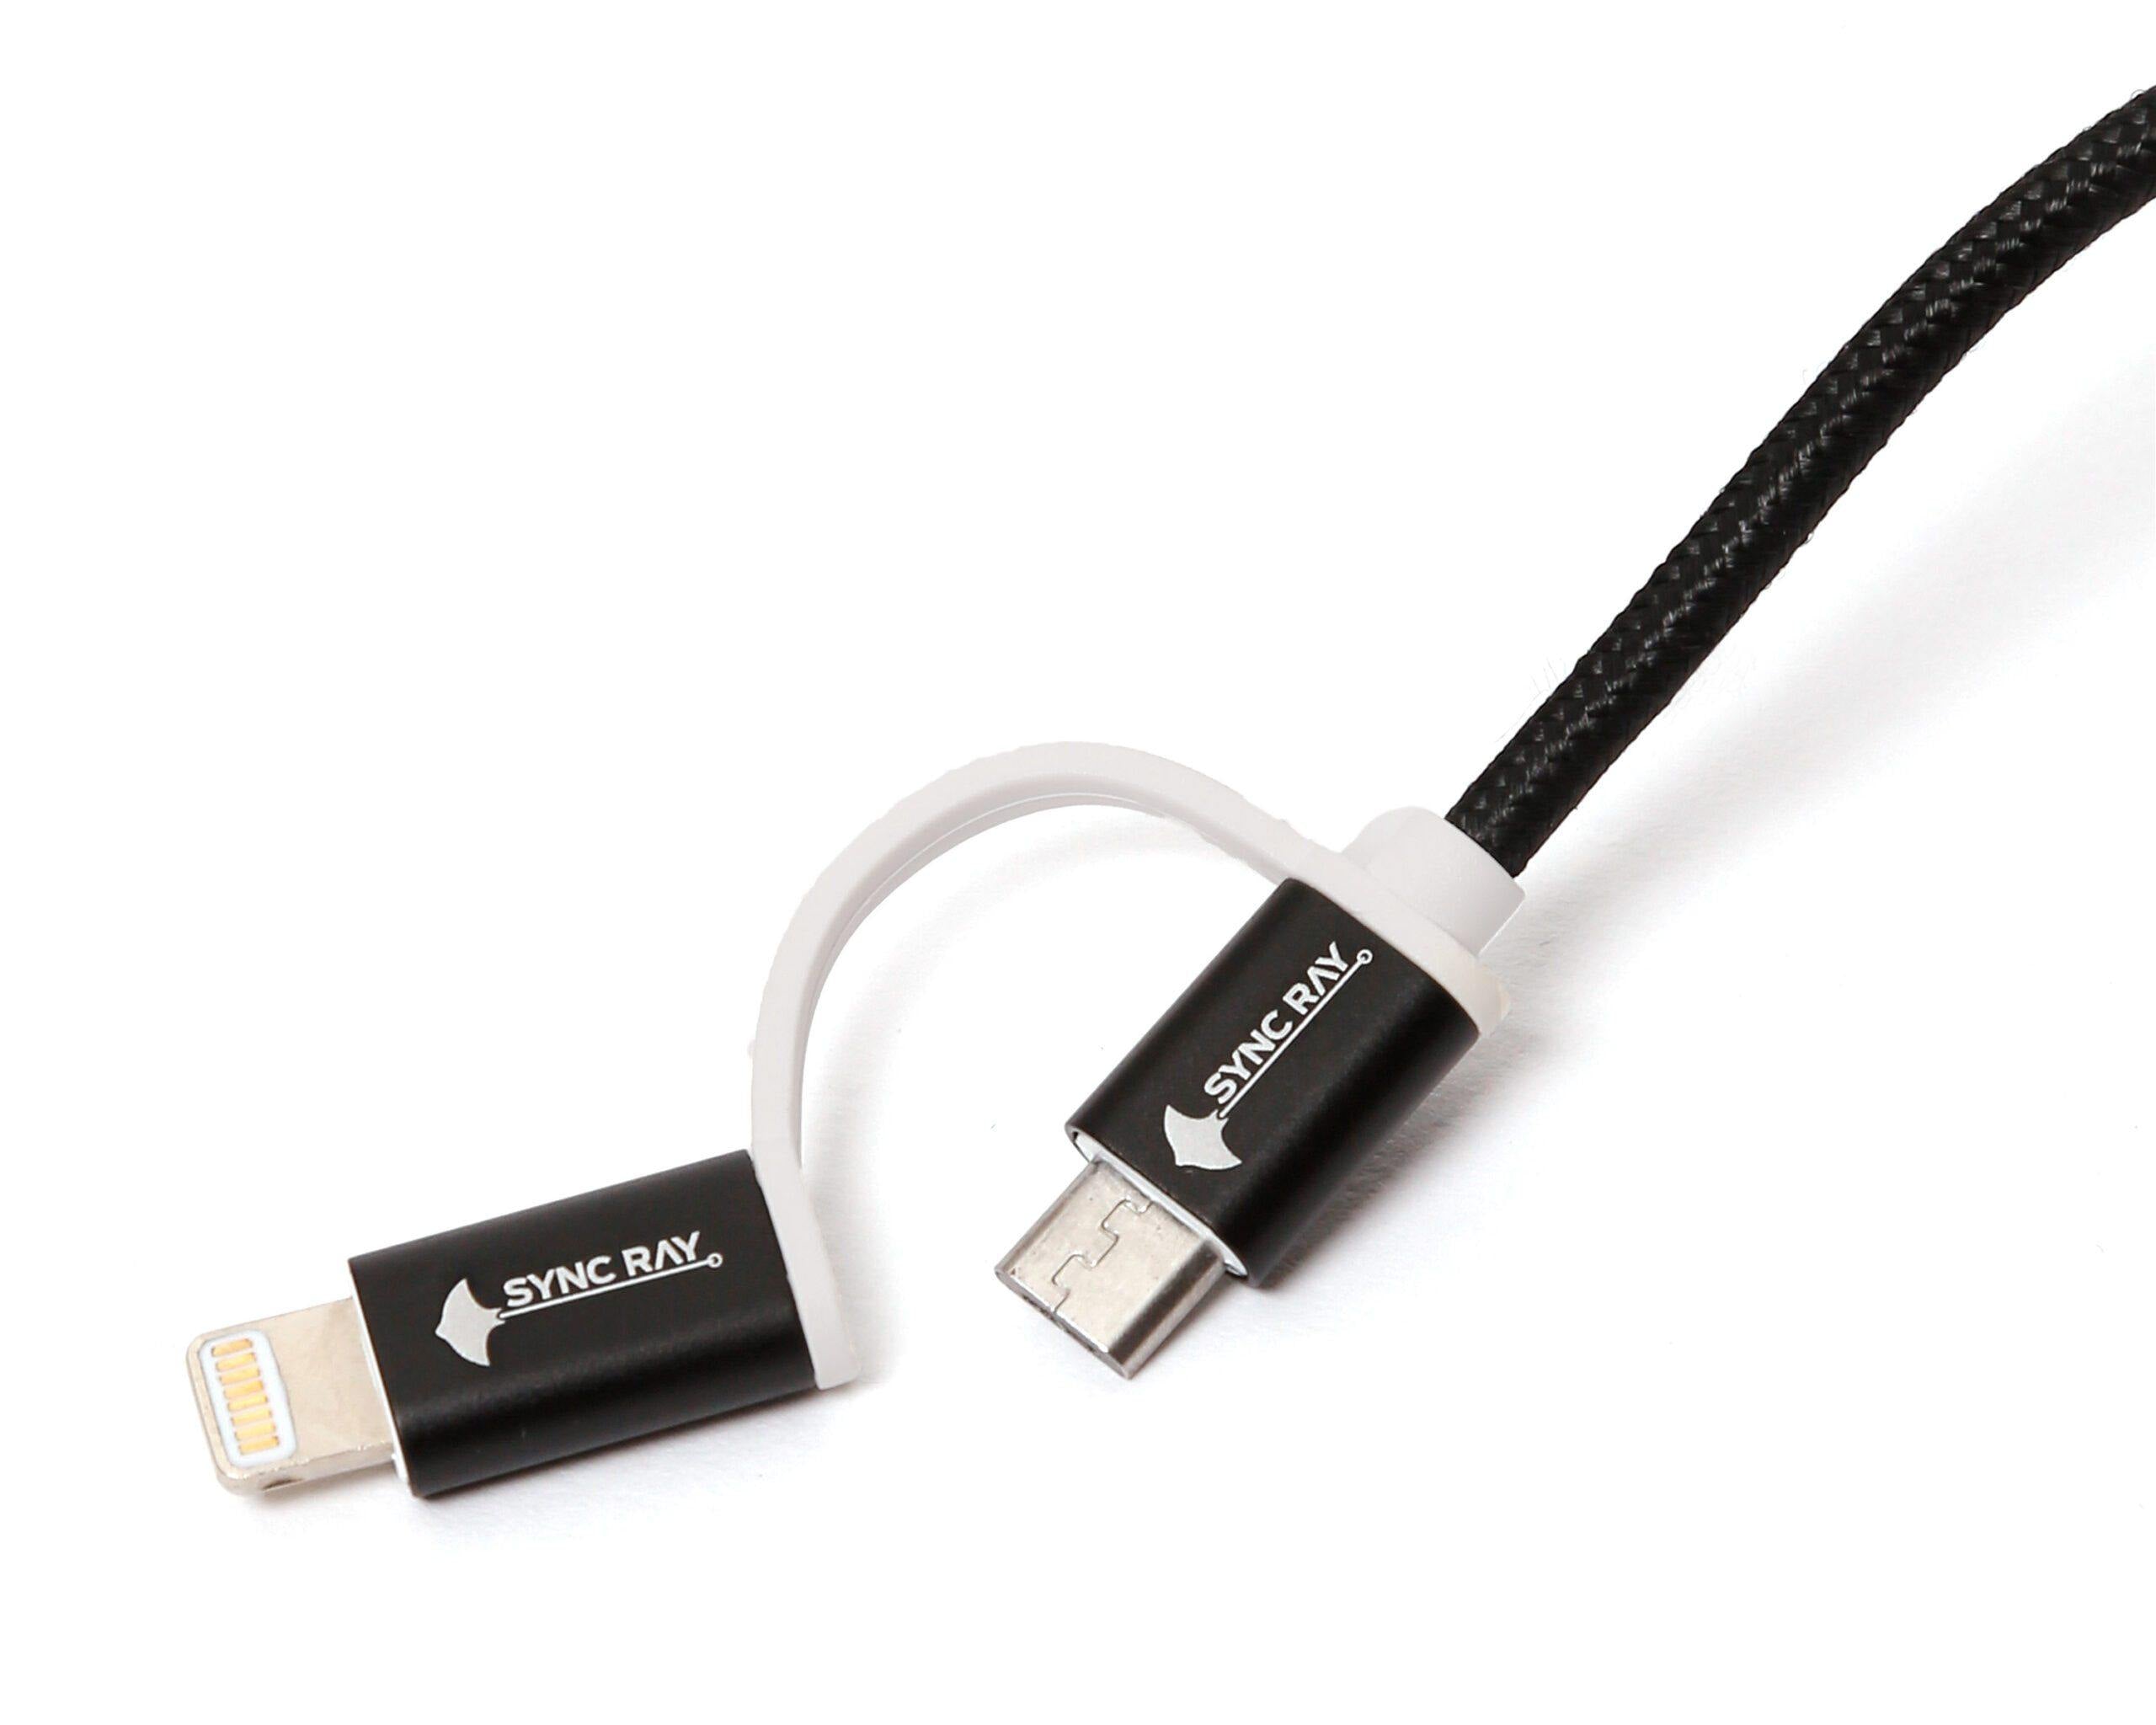 Ksix LC1740CD02 Cargador de Red USB 2A + Cable Micro USB Negro